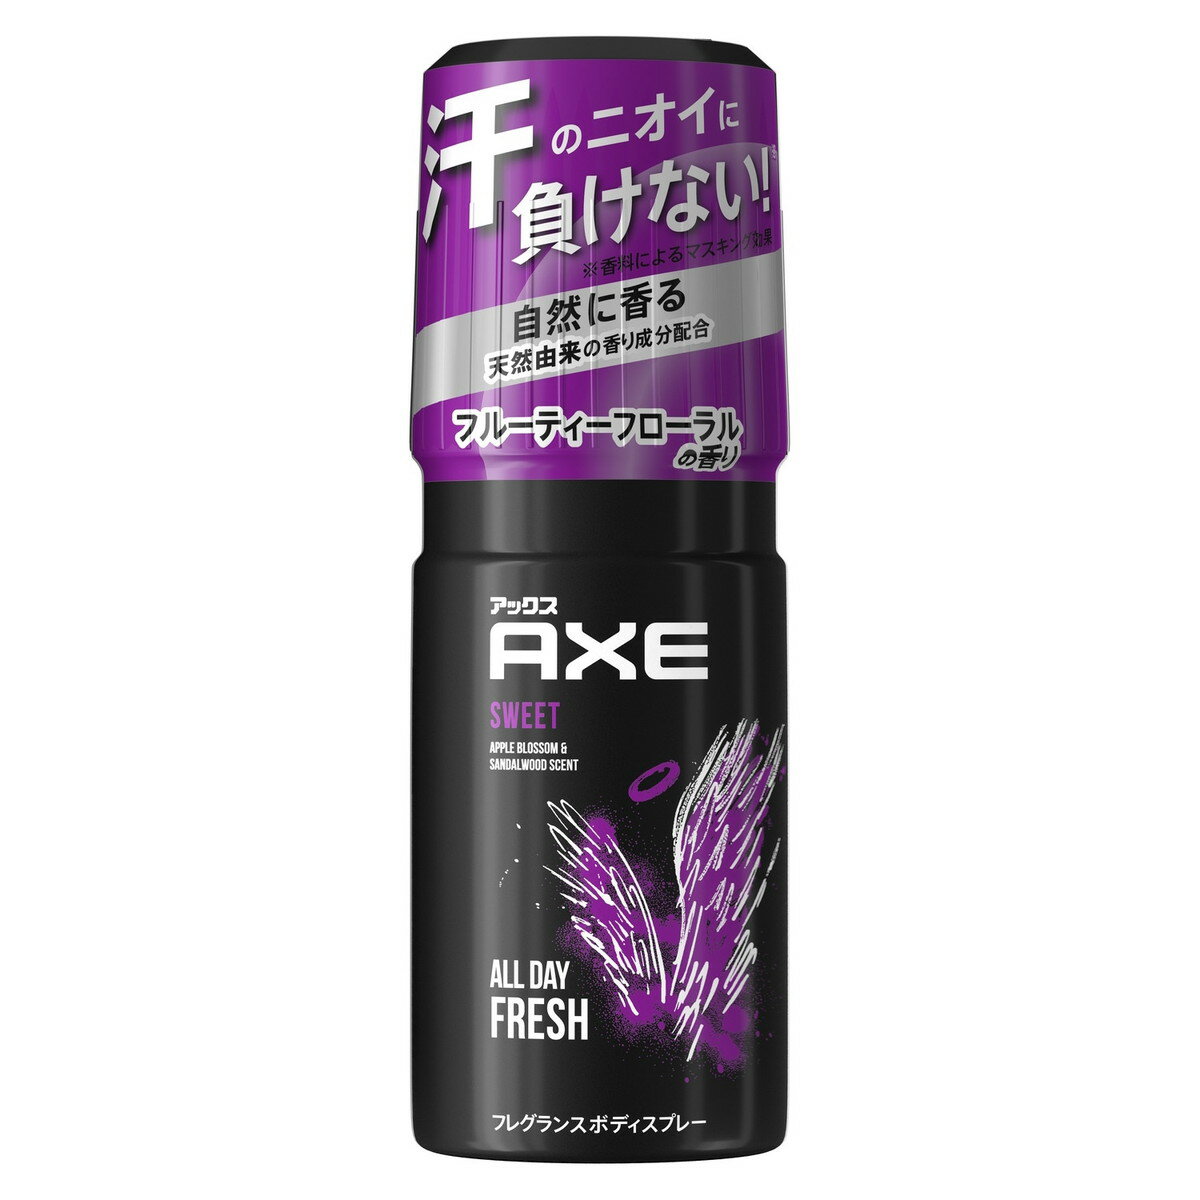 ユニリーバ・ジャパン AXE ( アックス ) ...の商品画像